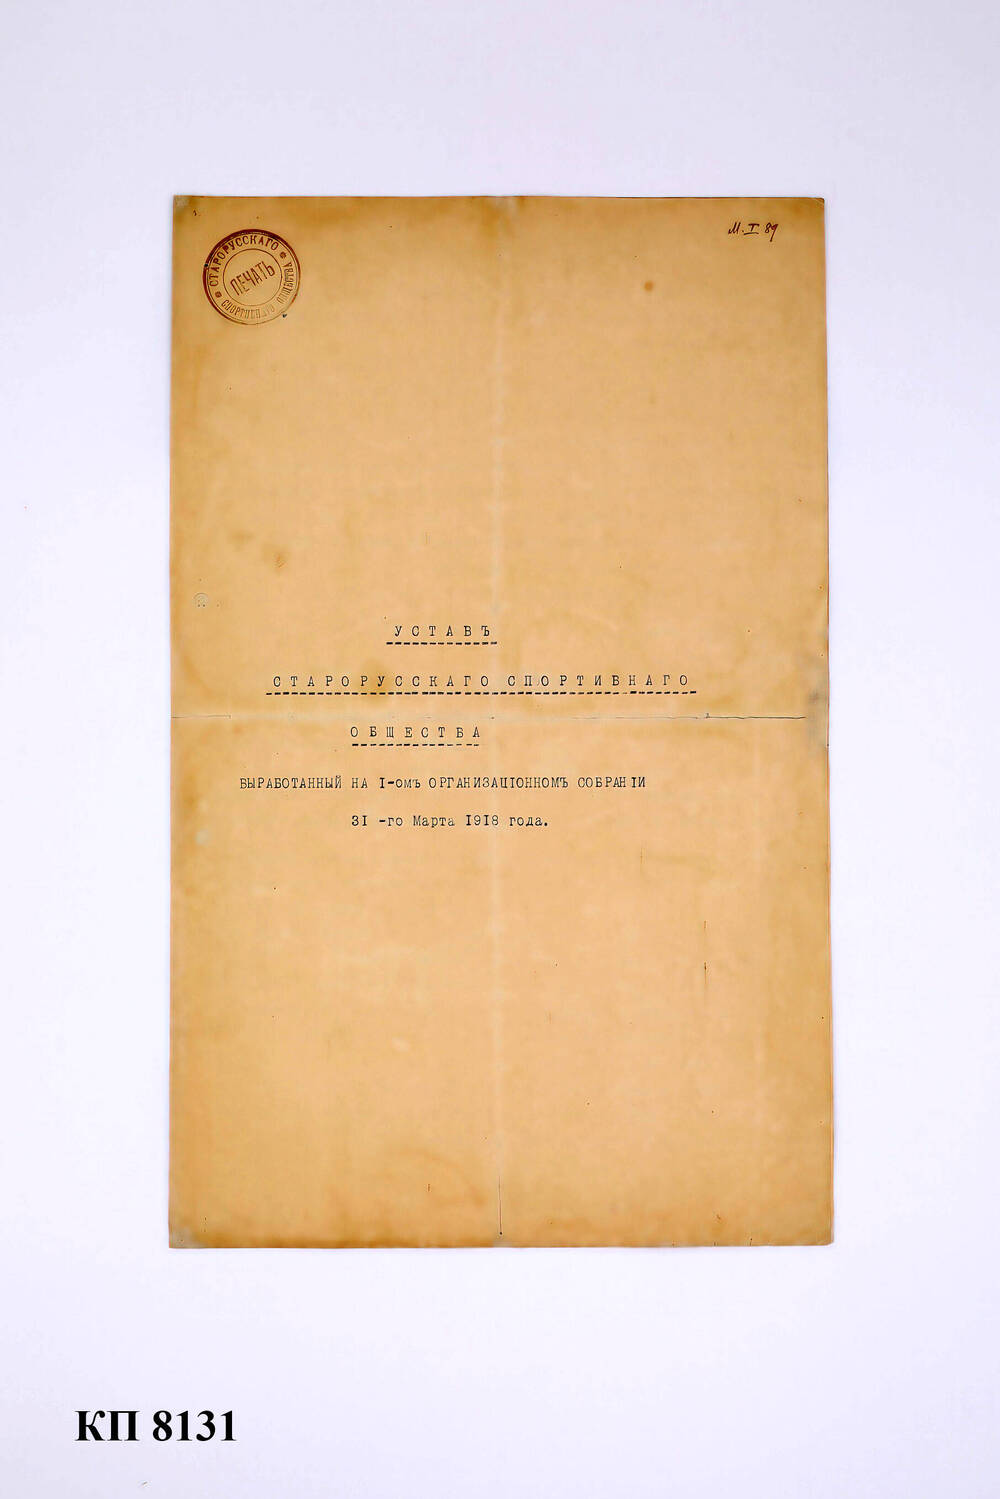 Устав Старорусского спортивного общества, 31 марта 1918 года.